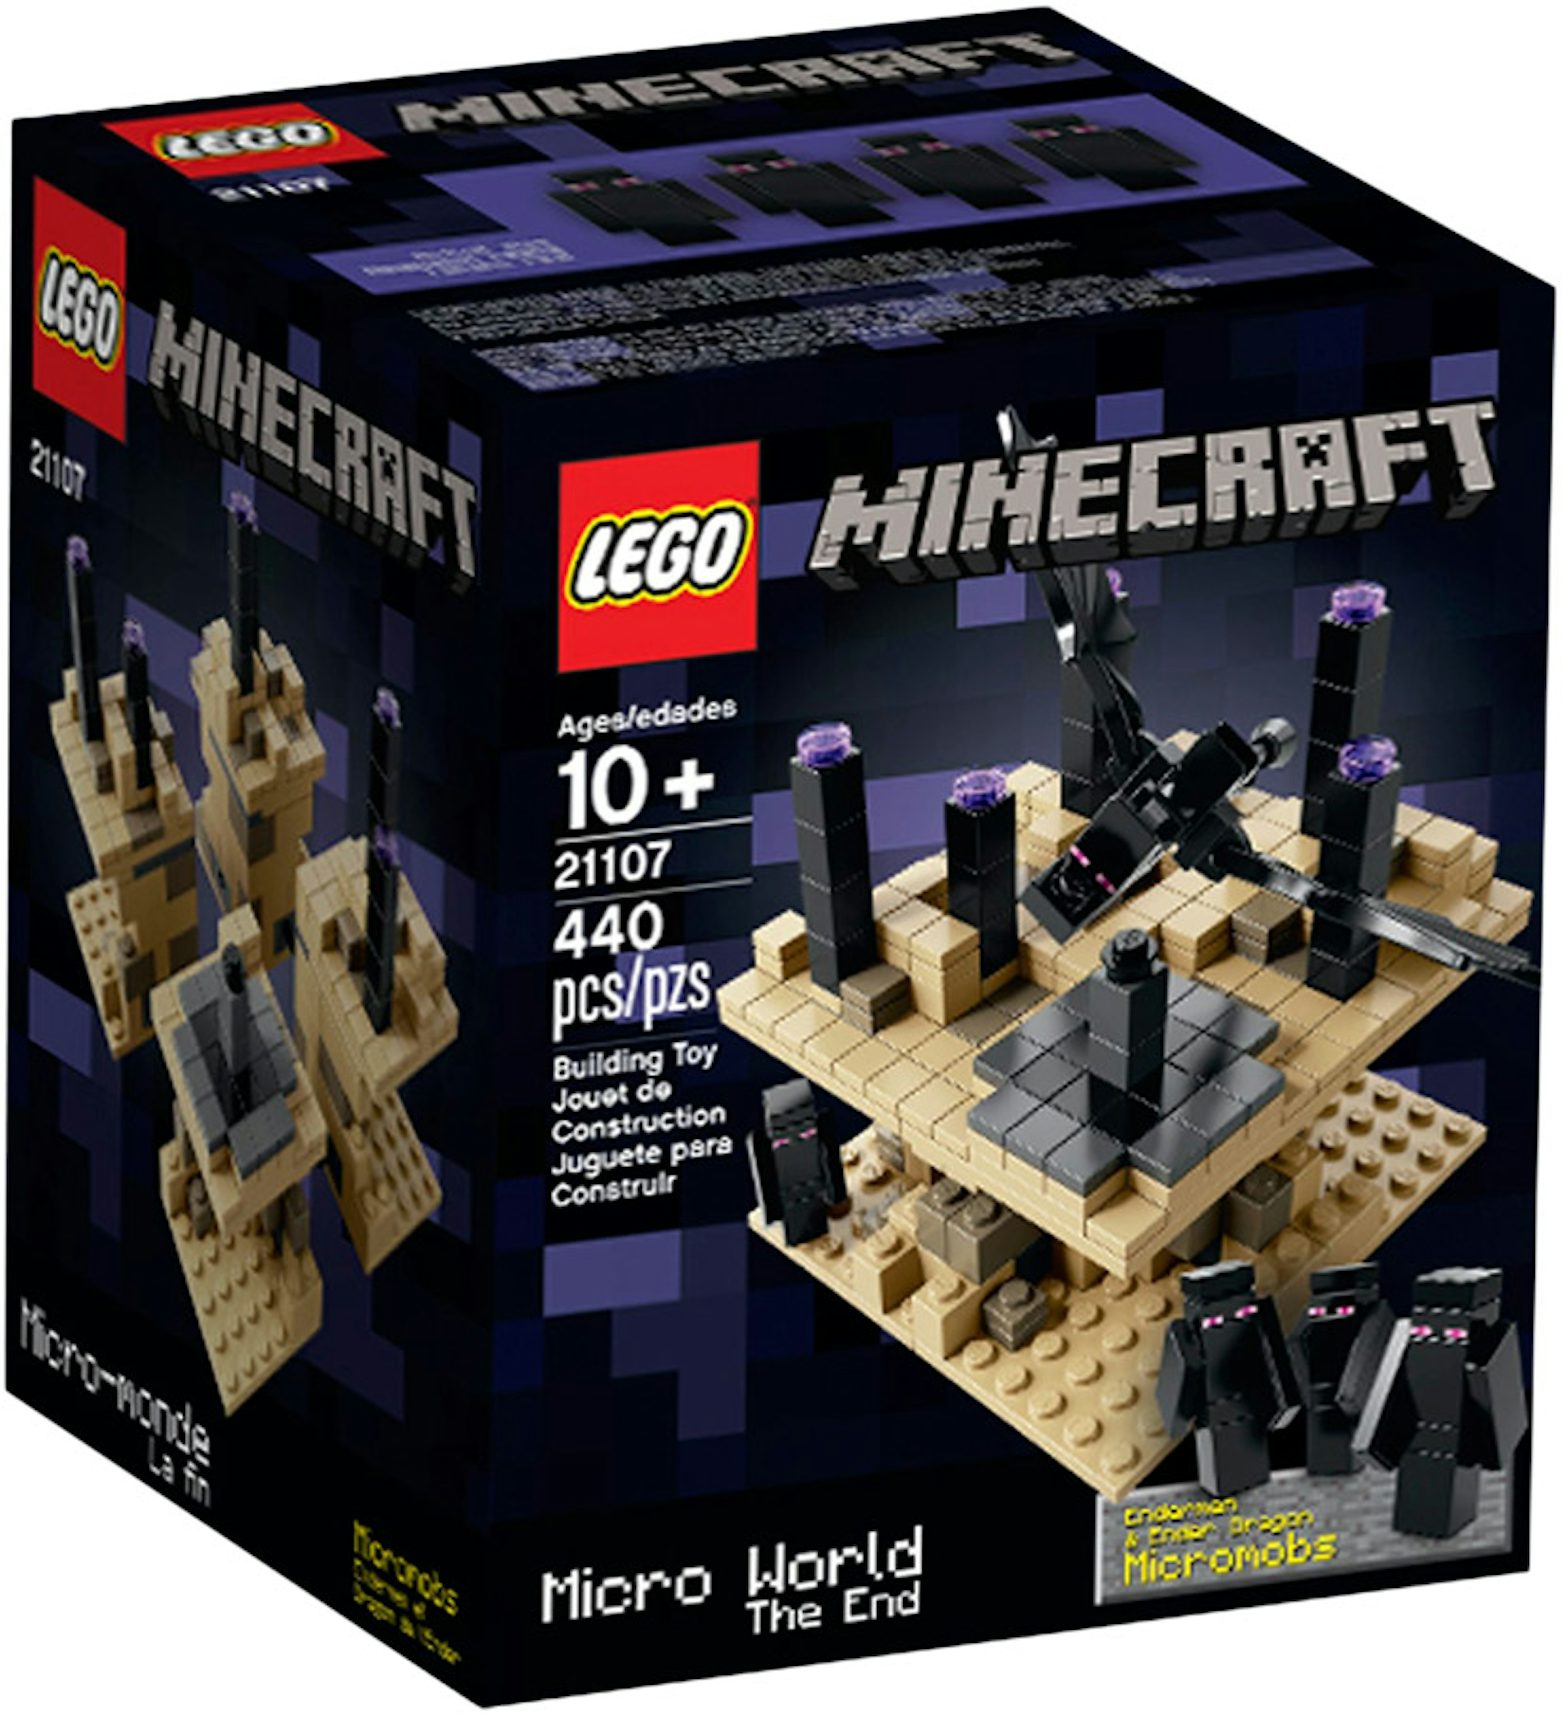 Lego minecraft ps4: Com o melhor preço